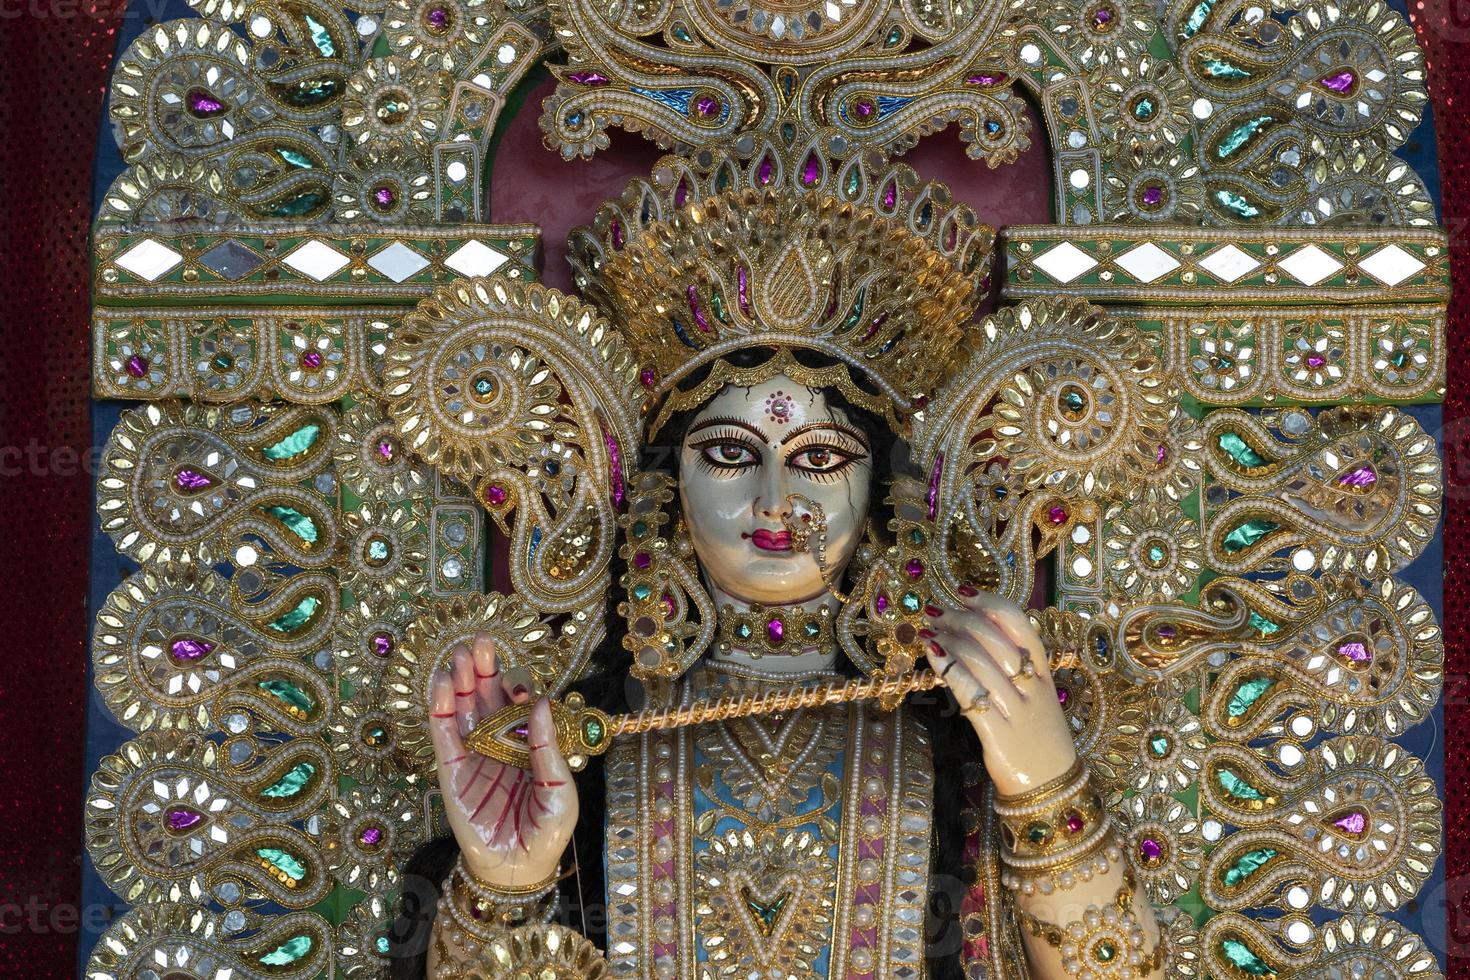 Durga statue close up photo